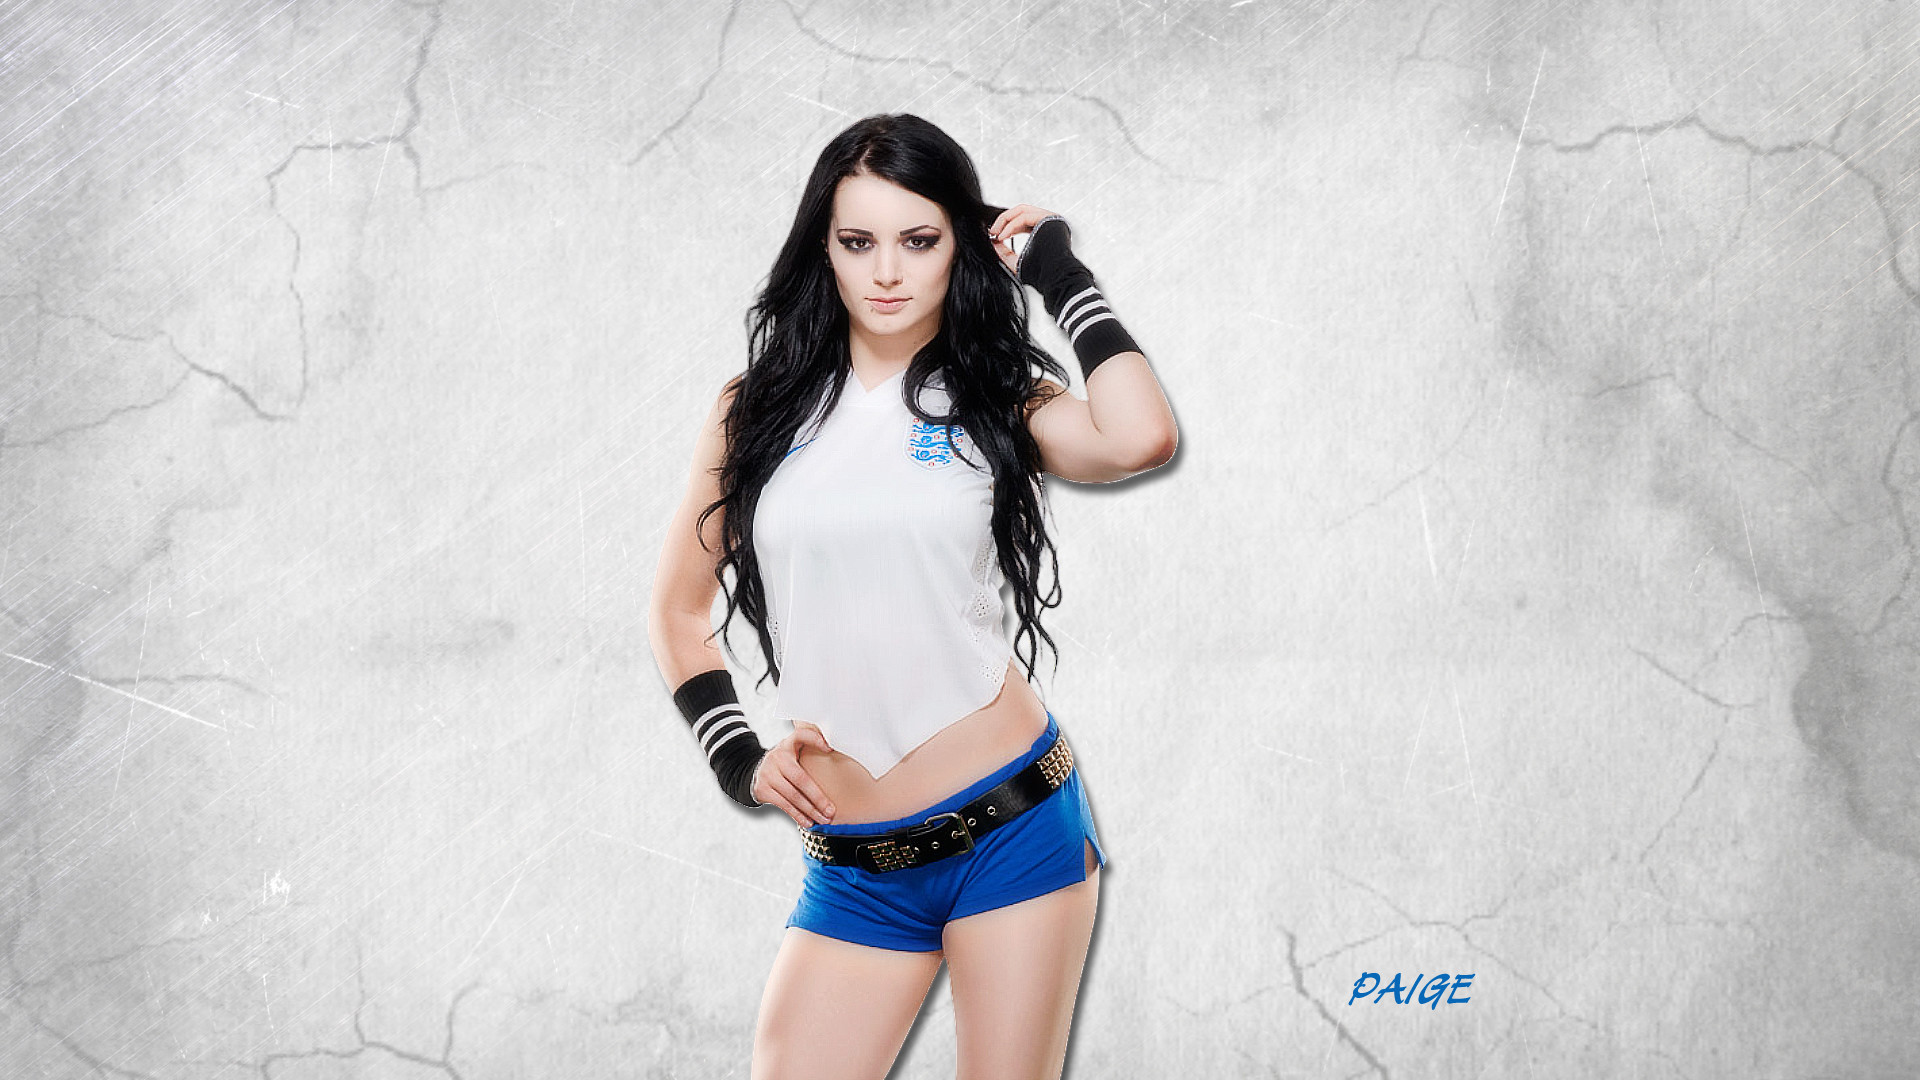 1920x1080 Paige HD Images 7 #PaigeHDImages #Paige #wwe #wrestling #divas #wwedivas